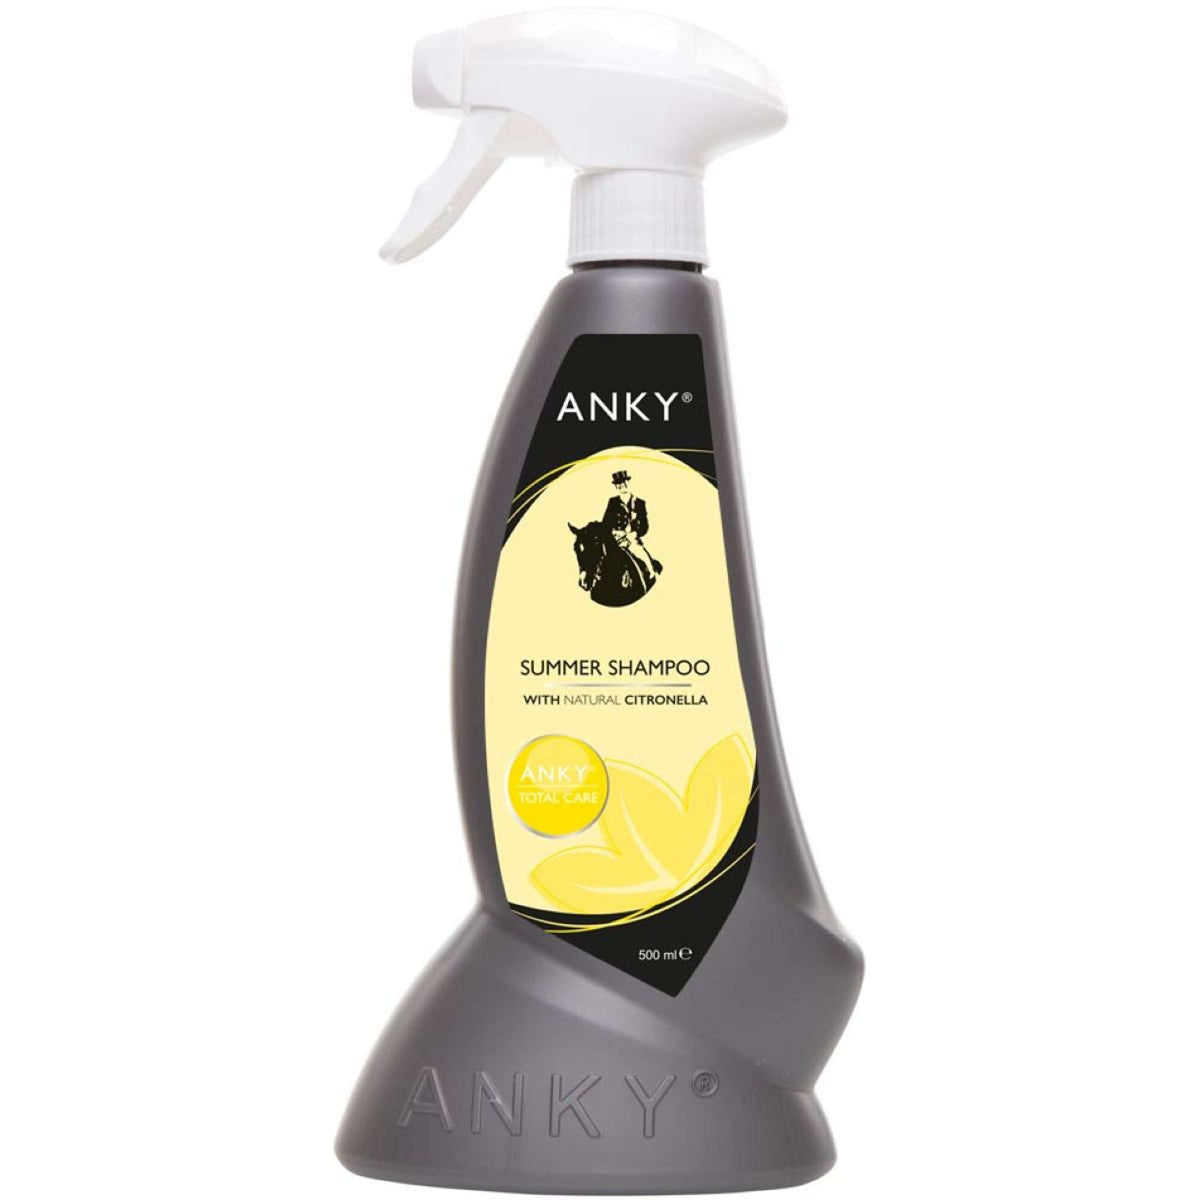 ANKY Shampoo Summer